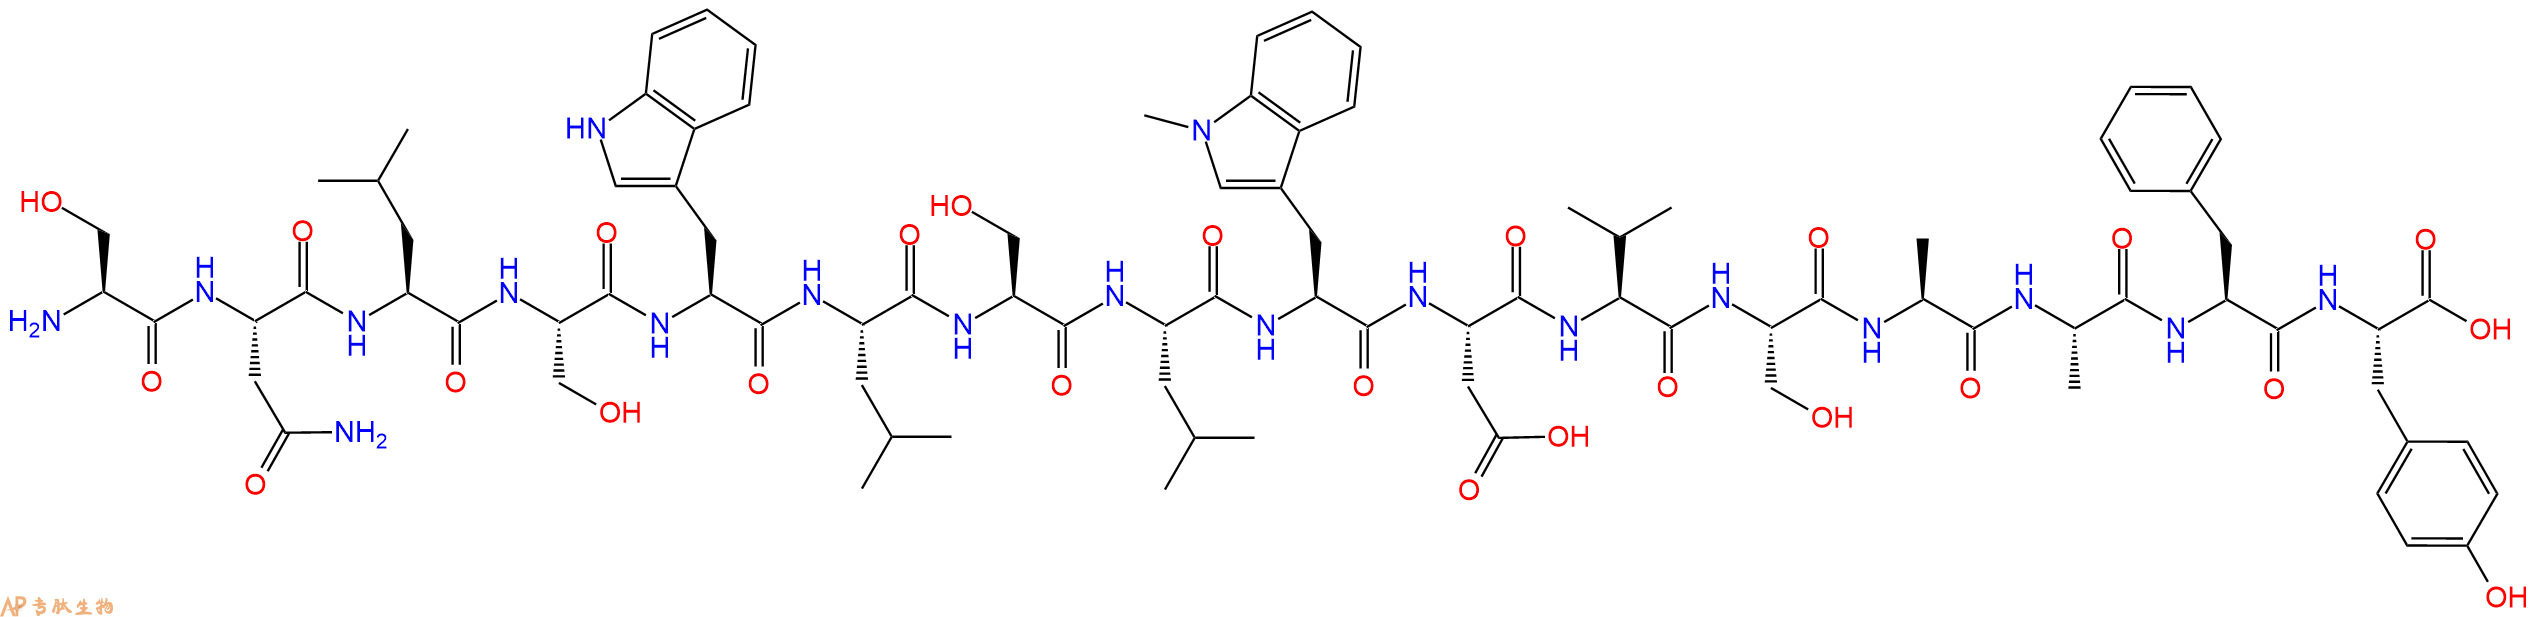 专肽生物产品H2N-Ser-Asn-Leu-Ser-Trp-Leu-Ser-Leu-Trp(Me)-Asp-Va